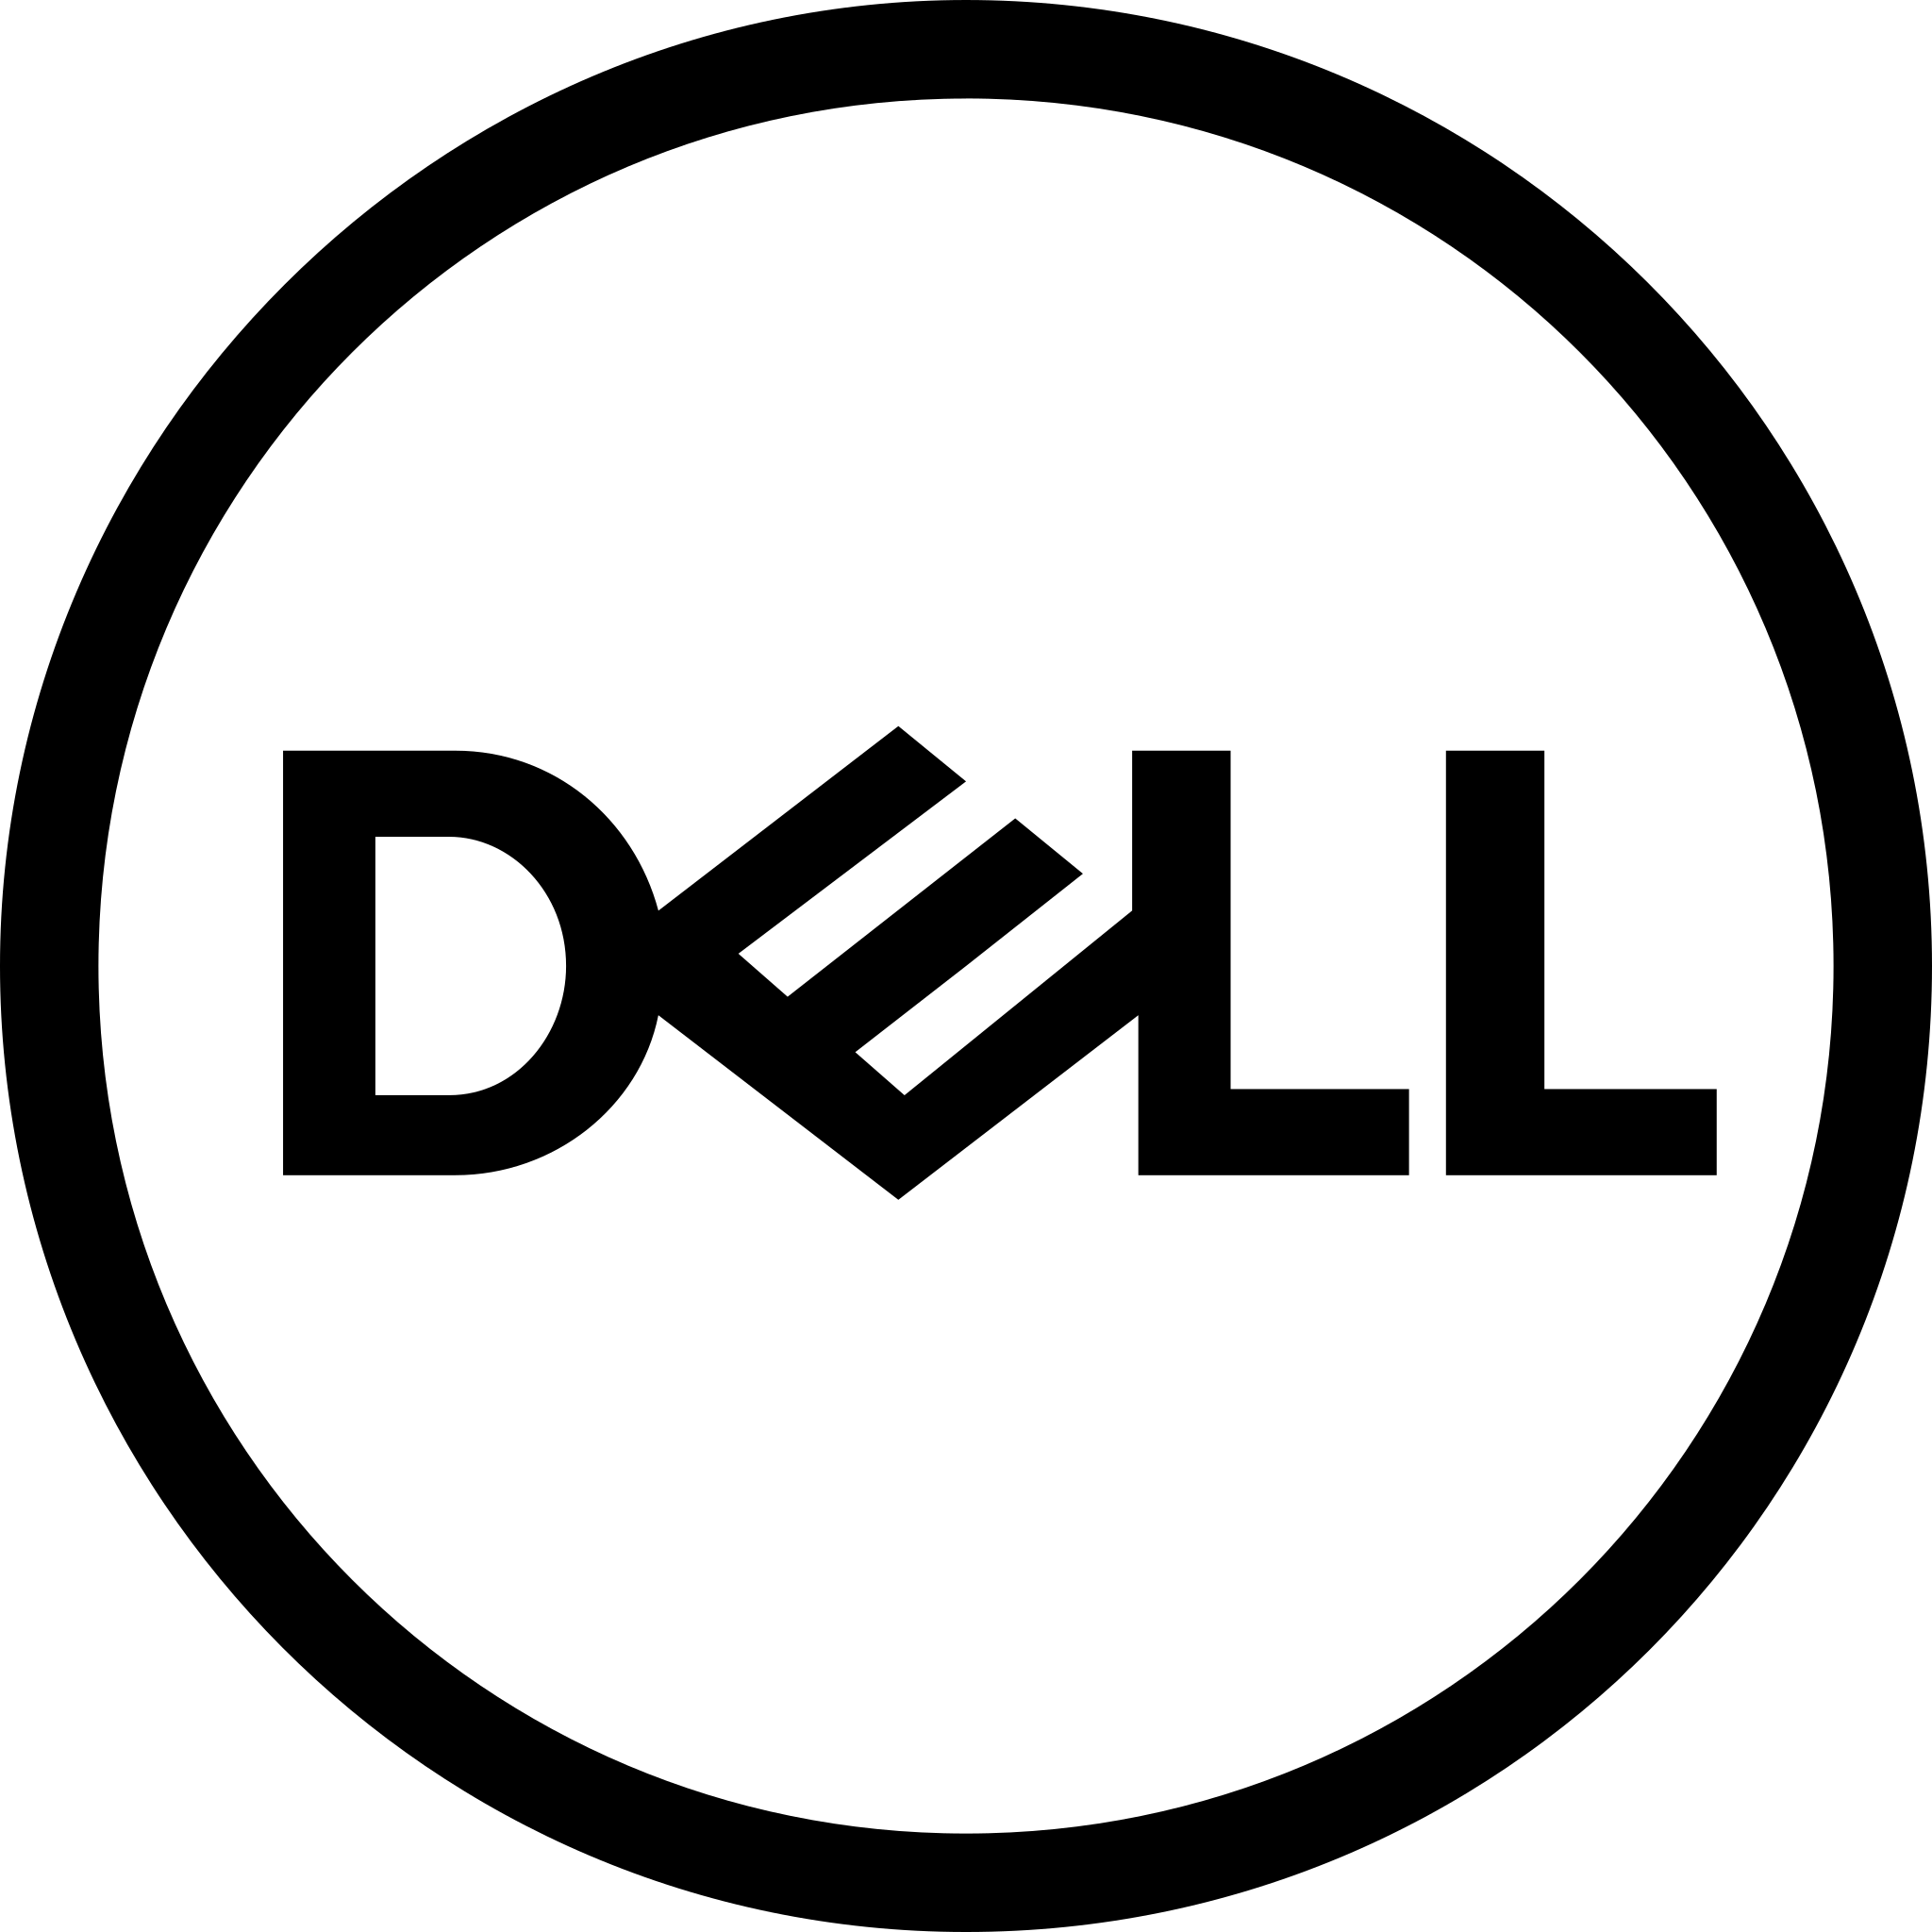 File:Dell logo 2016 black.svg - Wikimedia Commons